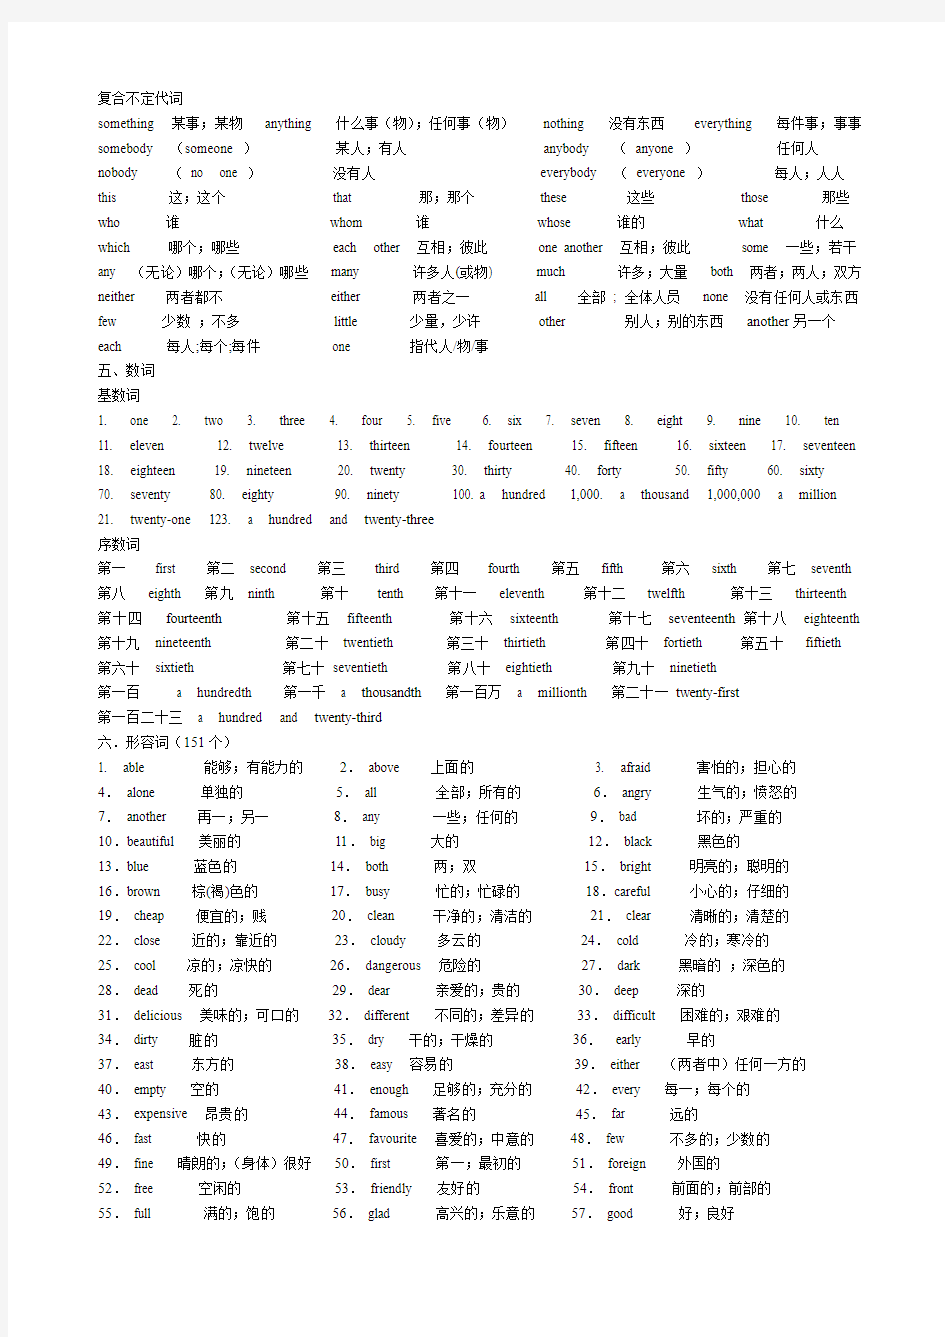 初中英语教学大纲中要求掌握的各类单词(按词性分类)